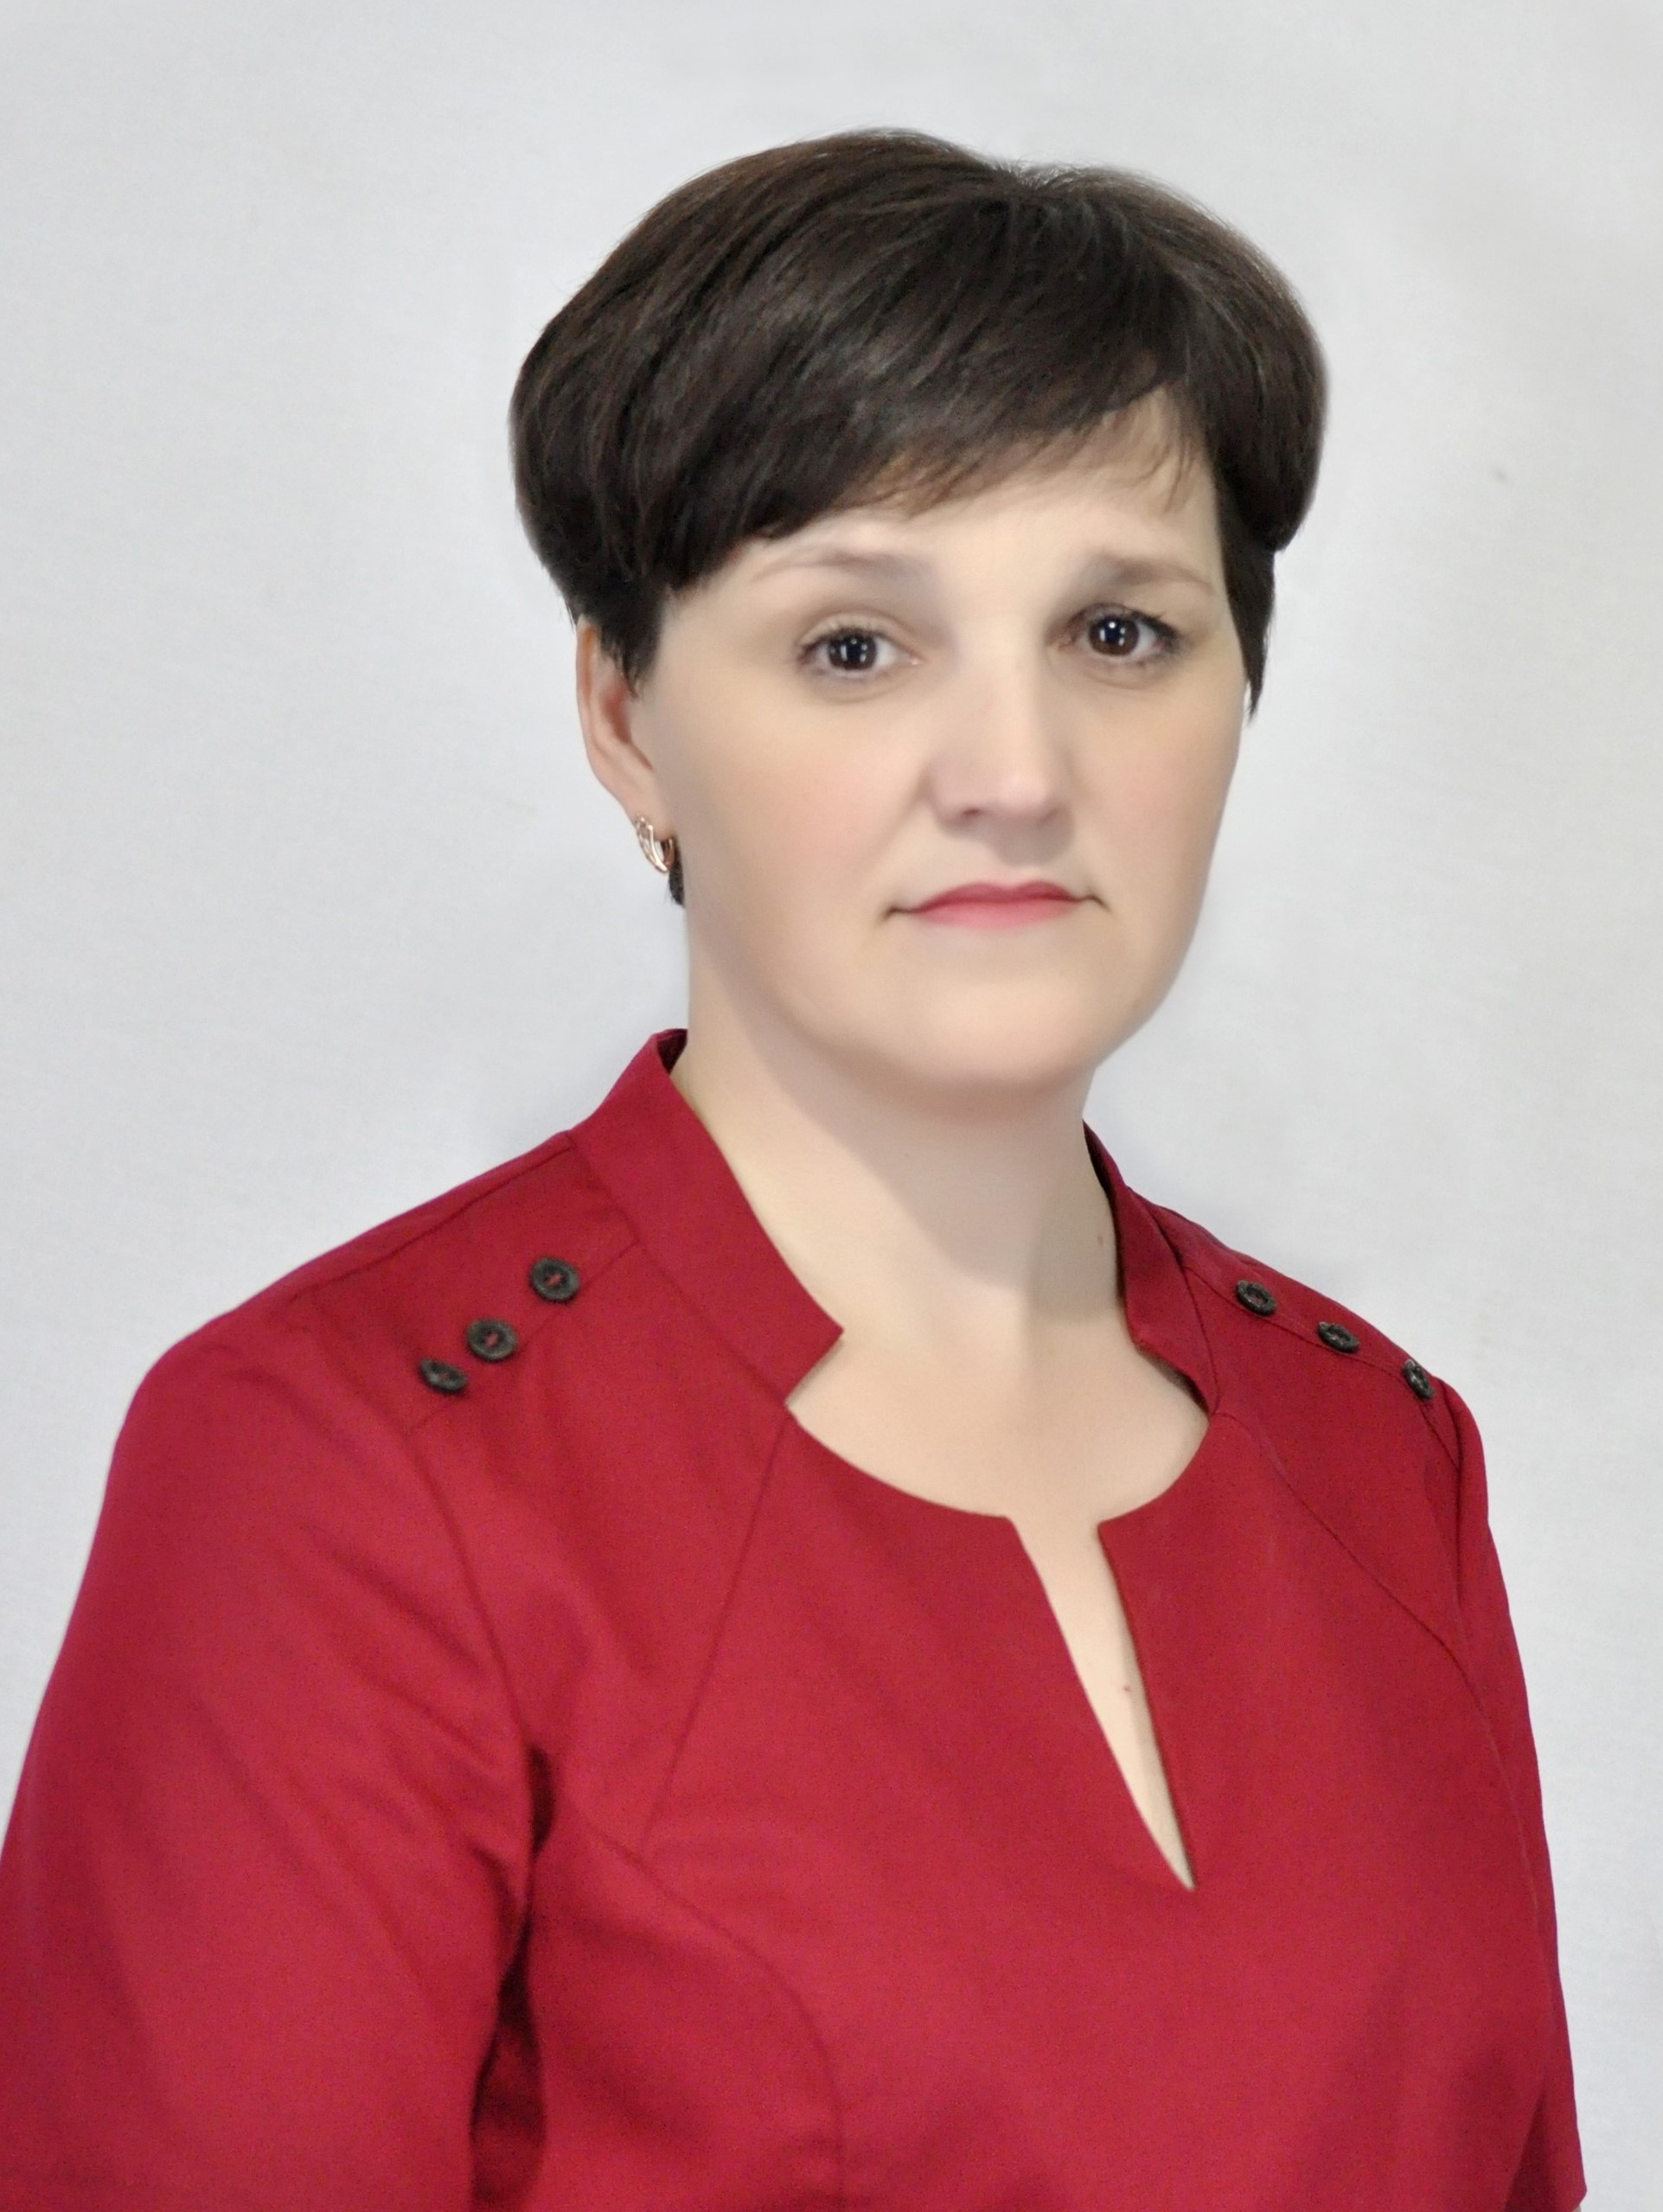 Ковалёва Наталья Николаевна. 2017 год